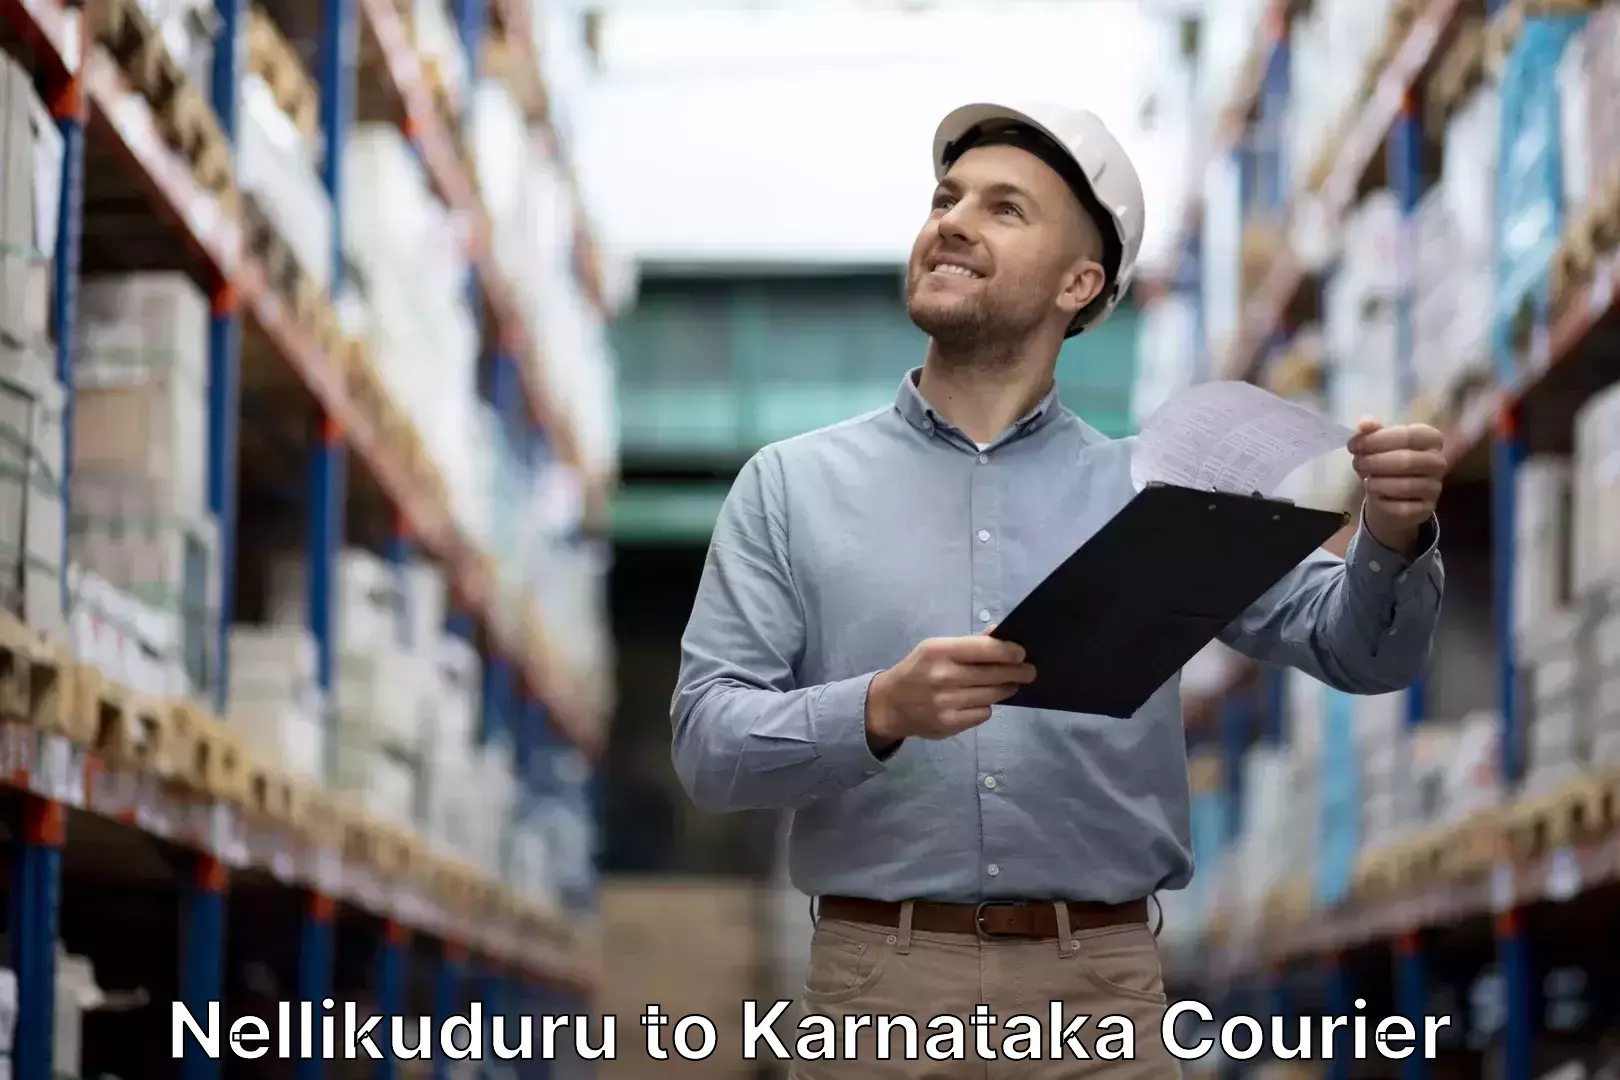 Baggage shipping calculator Nellikuduru to Karnataka